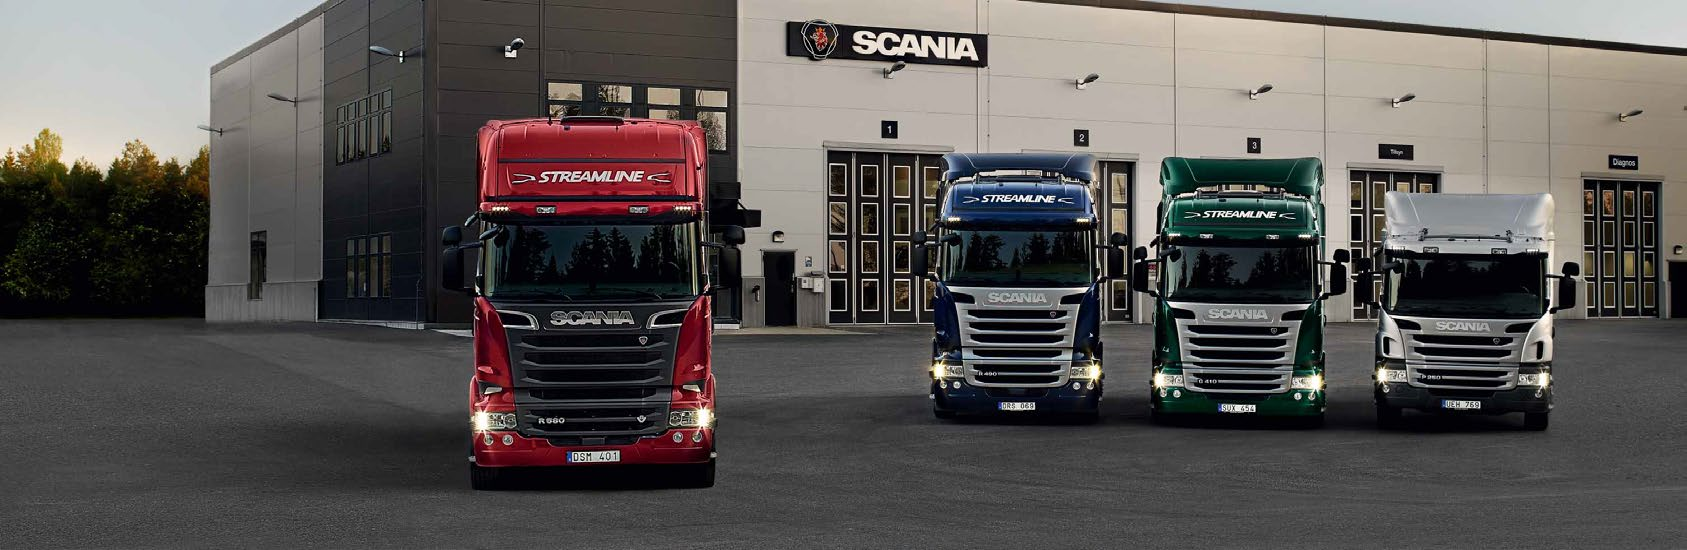 Scania R-serie Scania R-serie biedt maximale ruimte en comfort en is ontworpen voor lange afstanden. Het exclusieve interieur biedt ongeëvenaarde voldoening voor chauffeurs die altijd onderweg zijn.